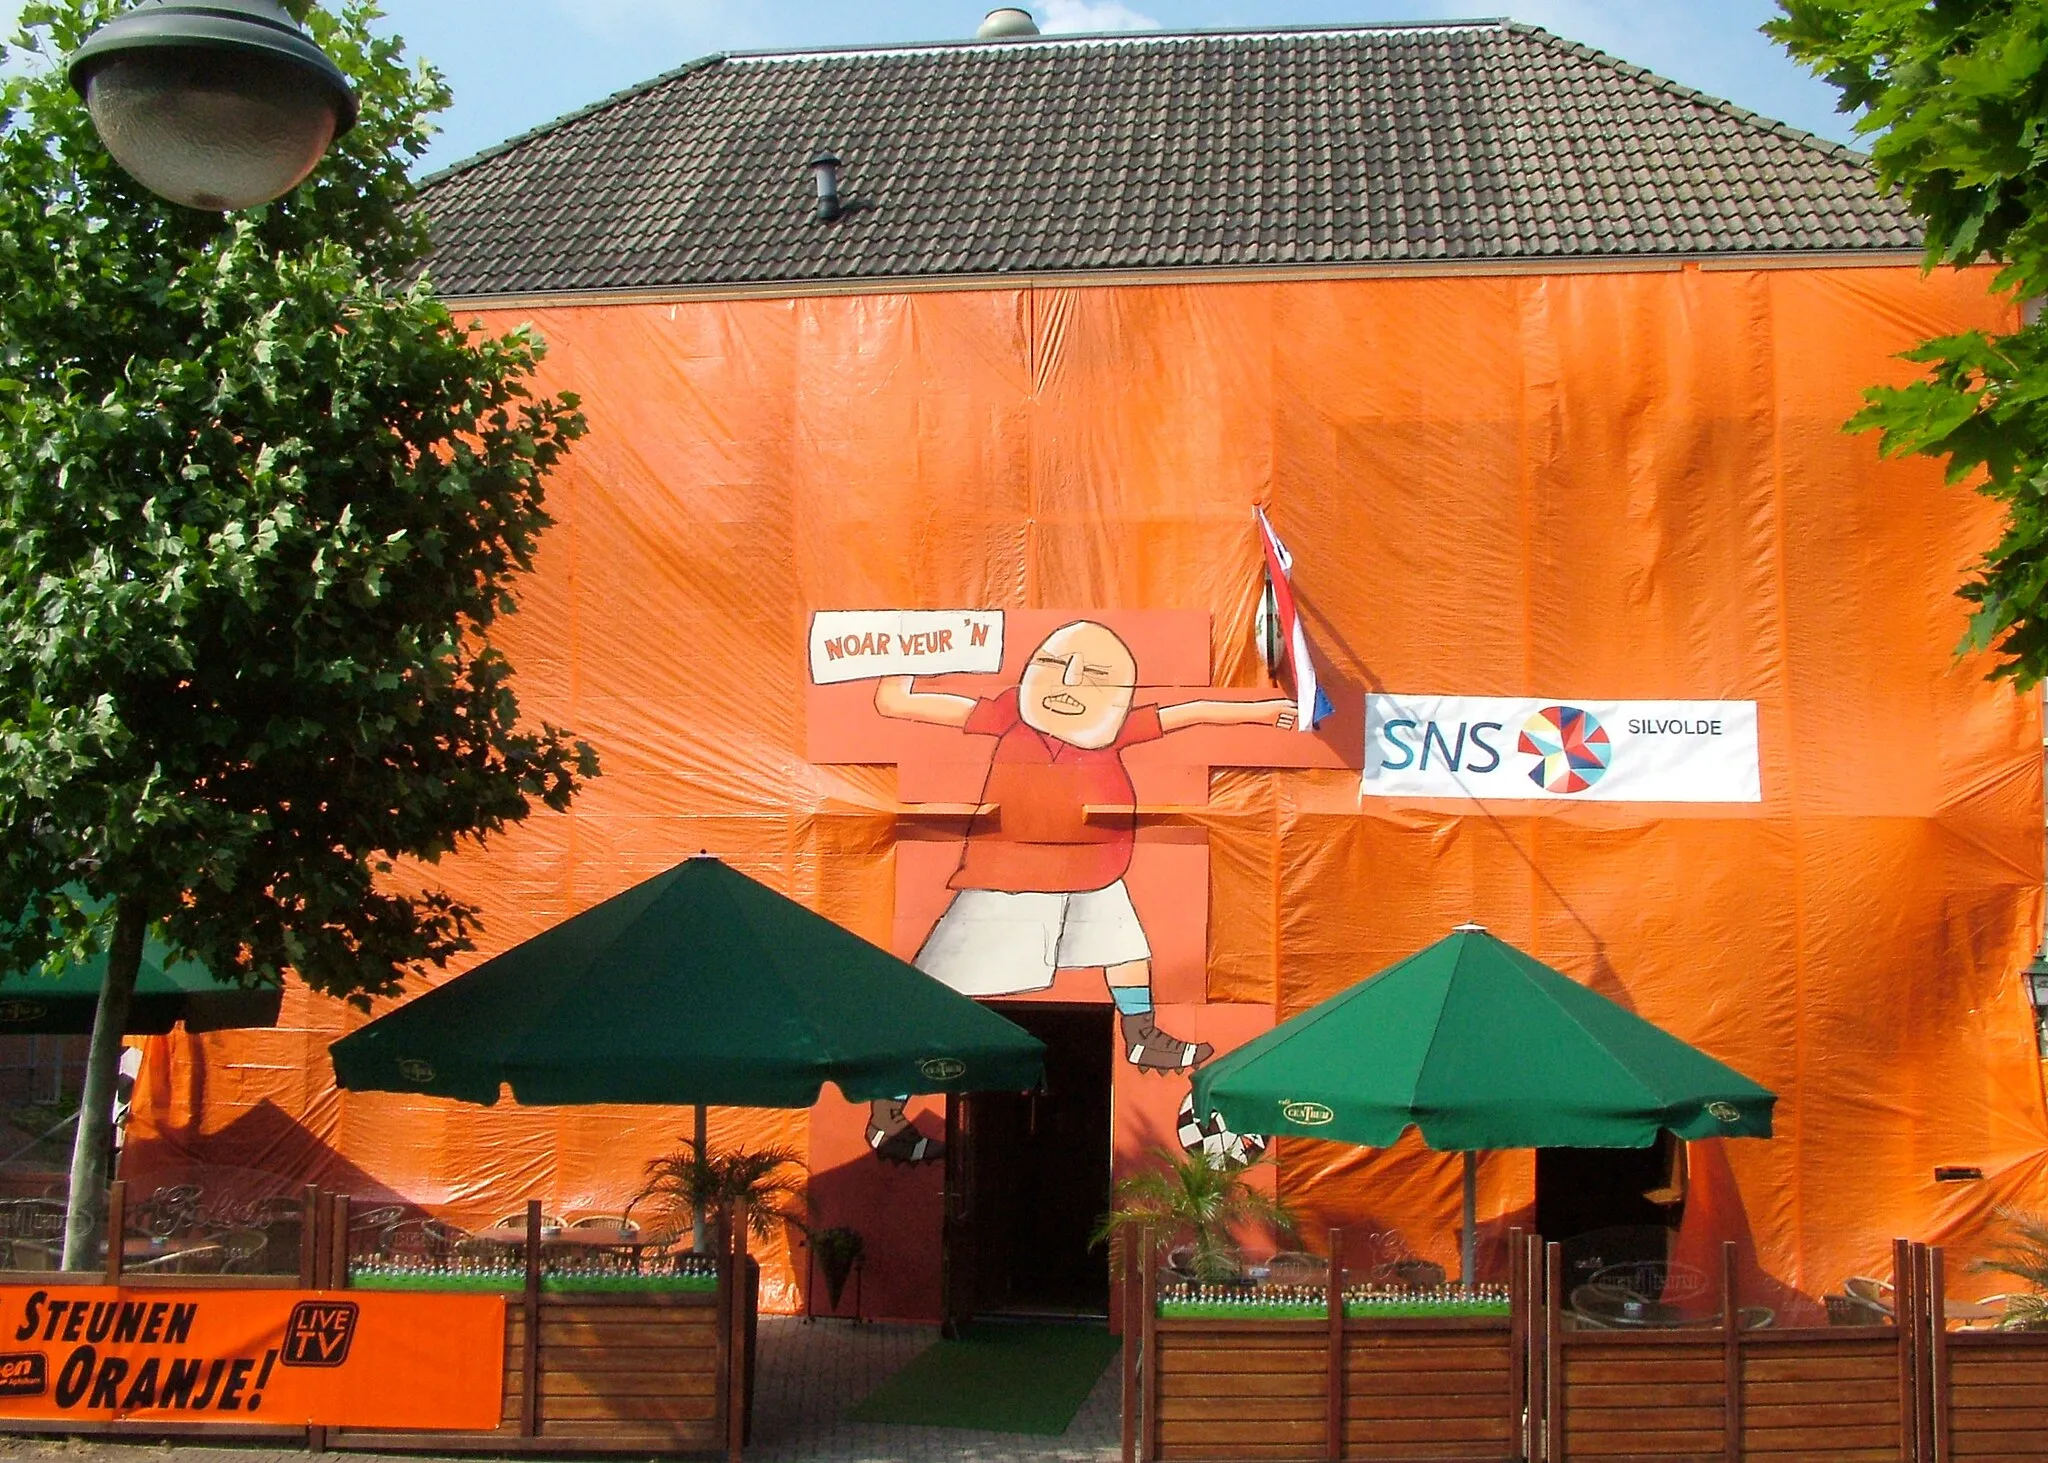 Photo showing: Anlässlich der Fußball-Europameisterschaft 2008: Kneipe in Silvolde, mit der niederländischen Nationalfarbe Orange verhüllt. Sprechblase im niedersächsischen Dialekt: "Nach vorn".